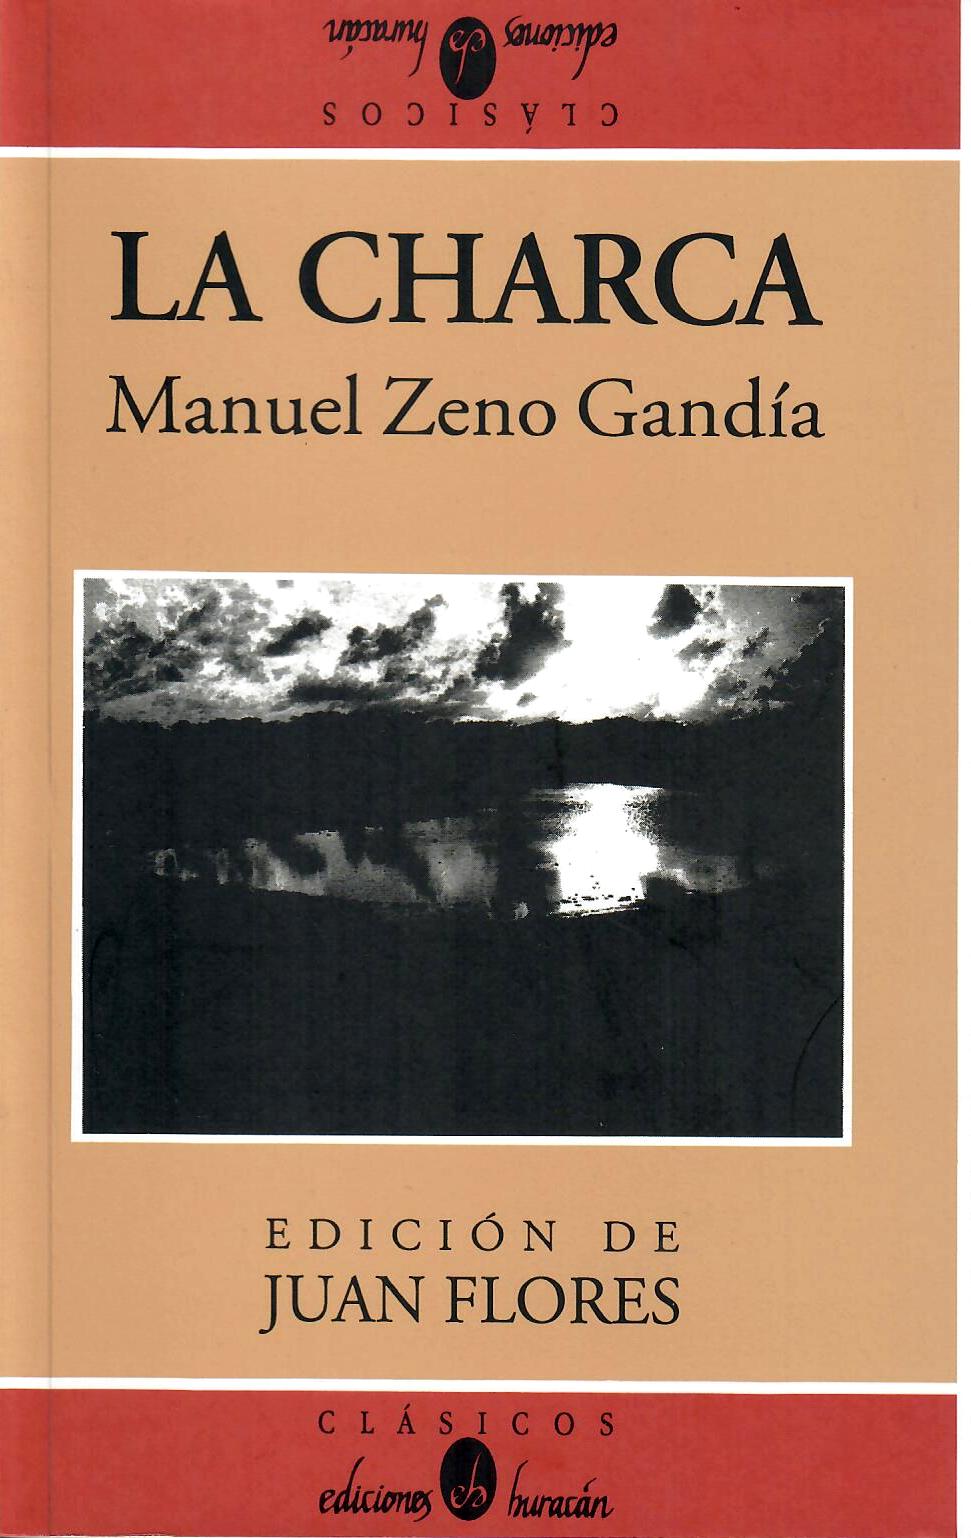 LA CHARCA - Manuel Zeno Gandía